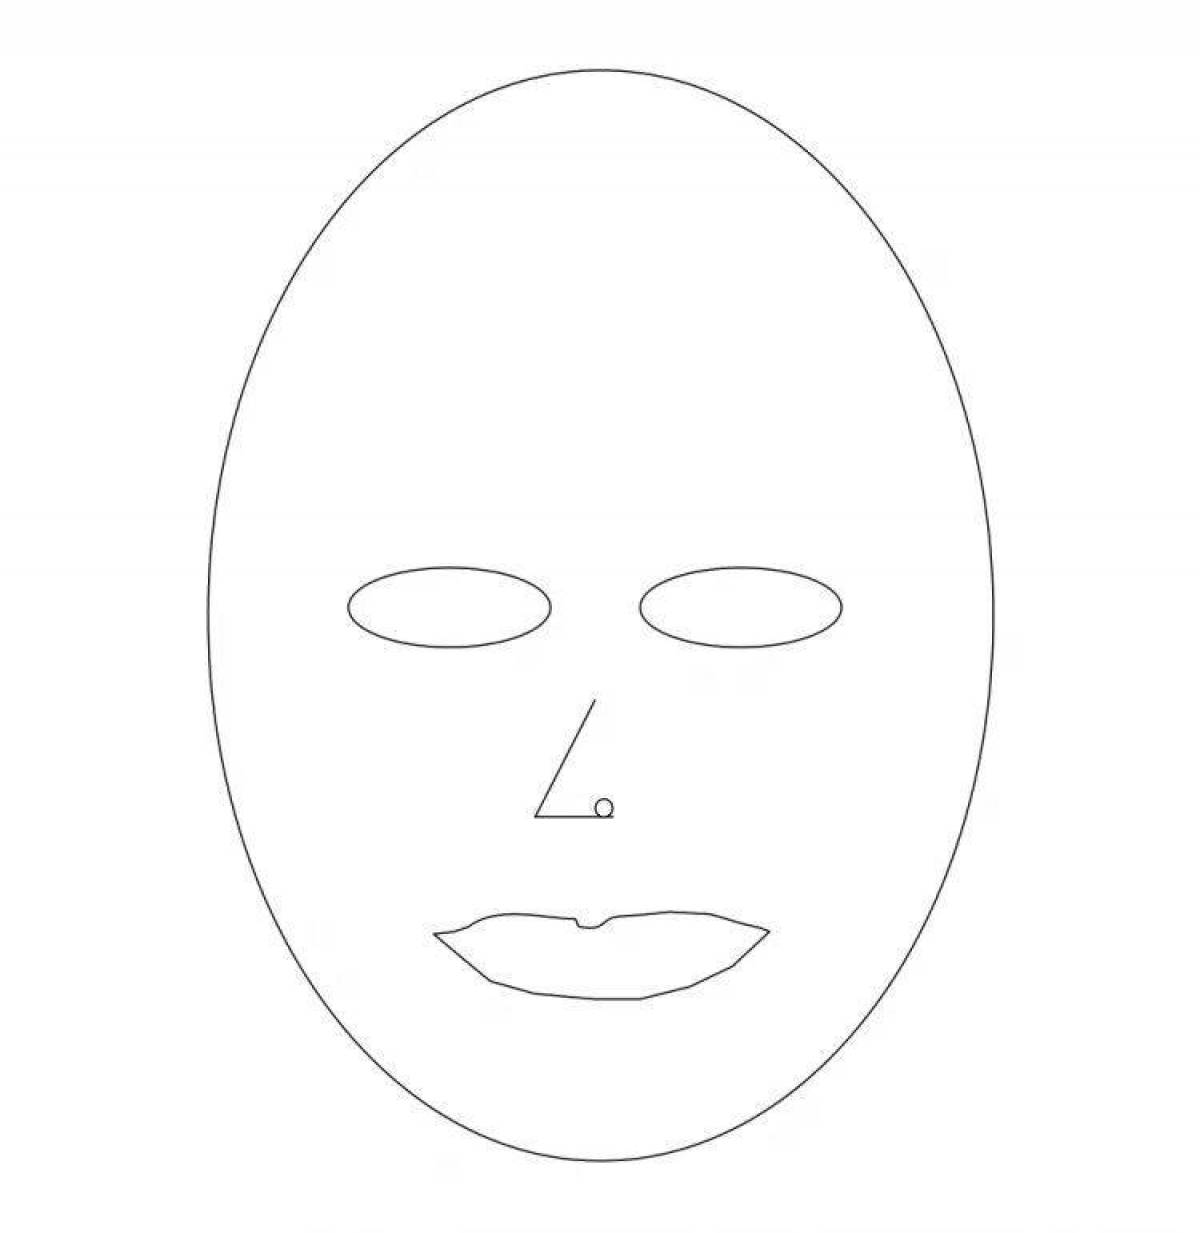 Косметика распечатать маски. Распечатка маски для лица. Маска раскраска. Раскраска маска для лица. Макет маски для лица.